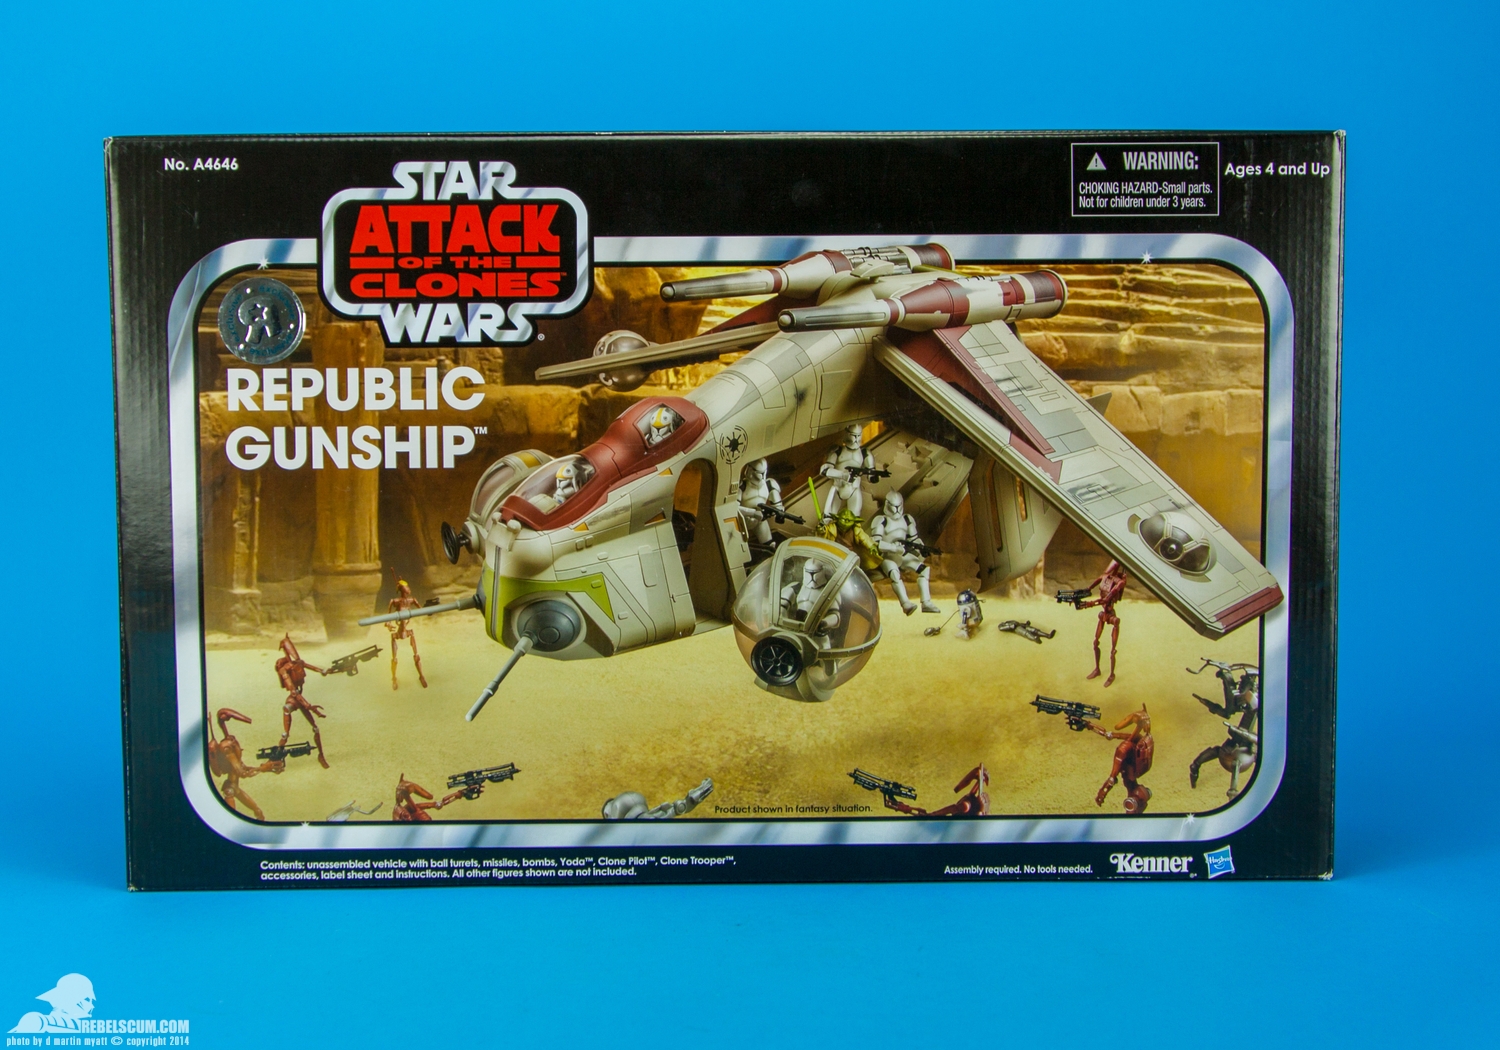 Republic-Gunship-The-Vintage-Collection-Hasbro-050.jpg